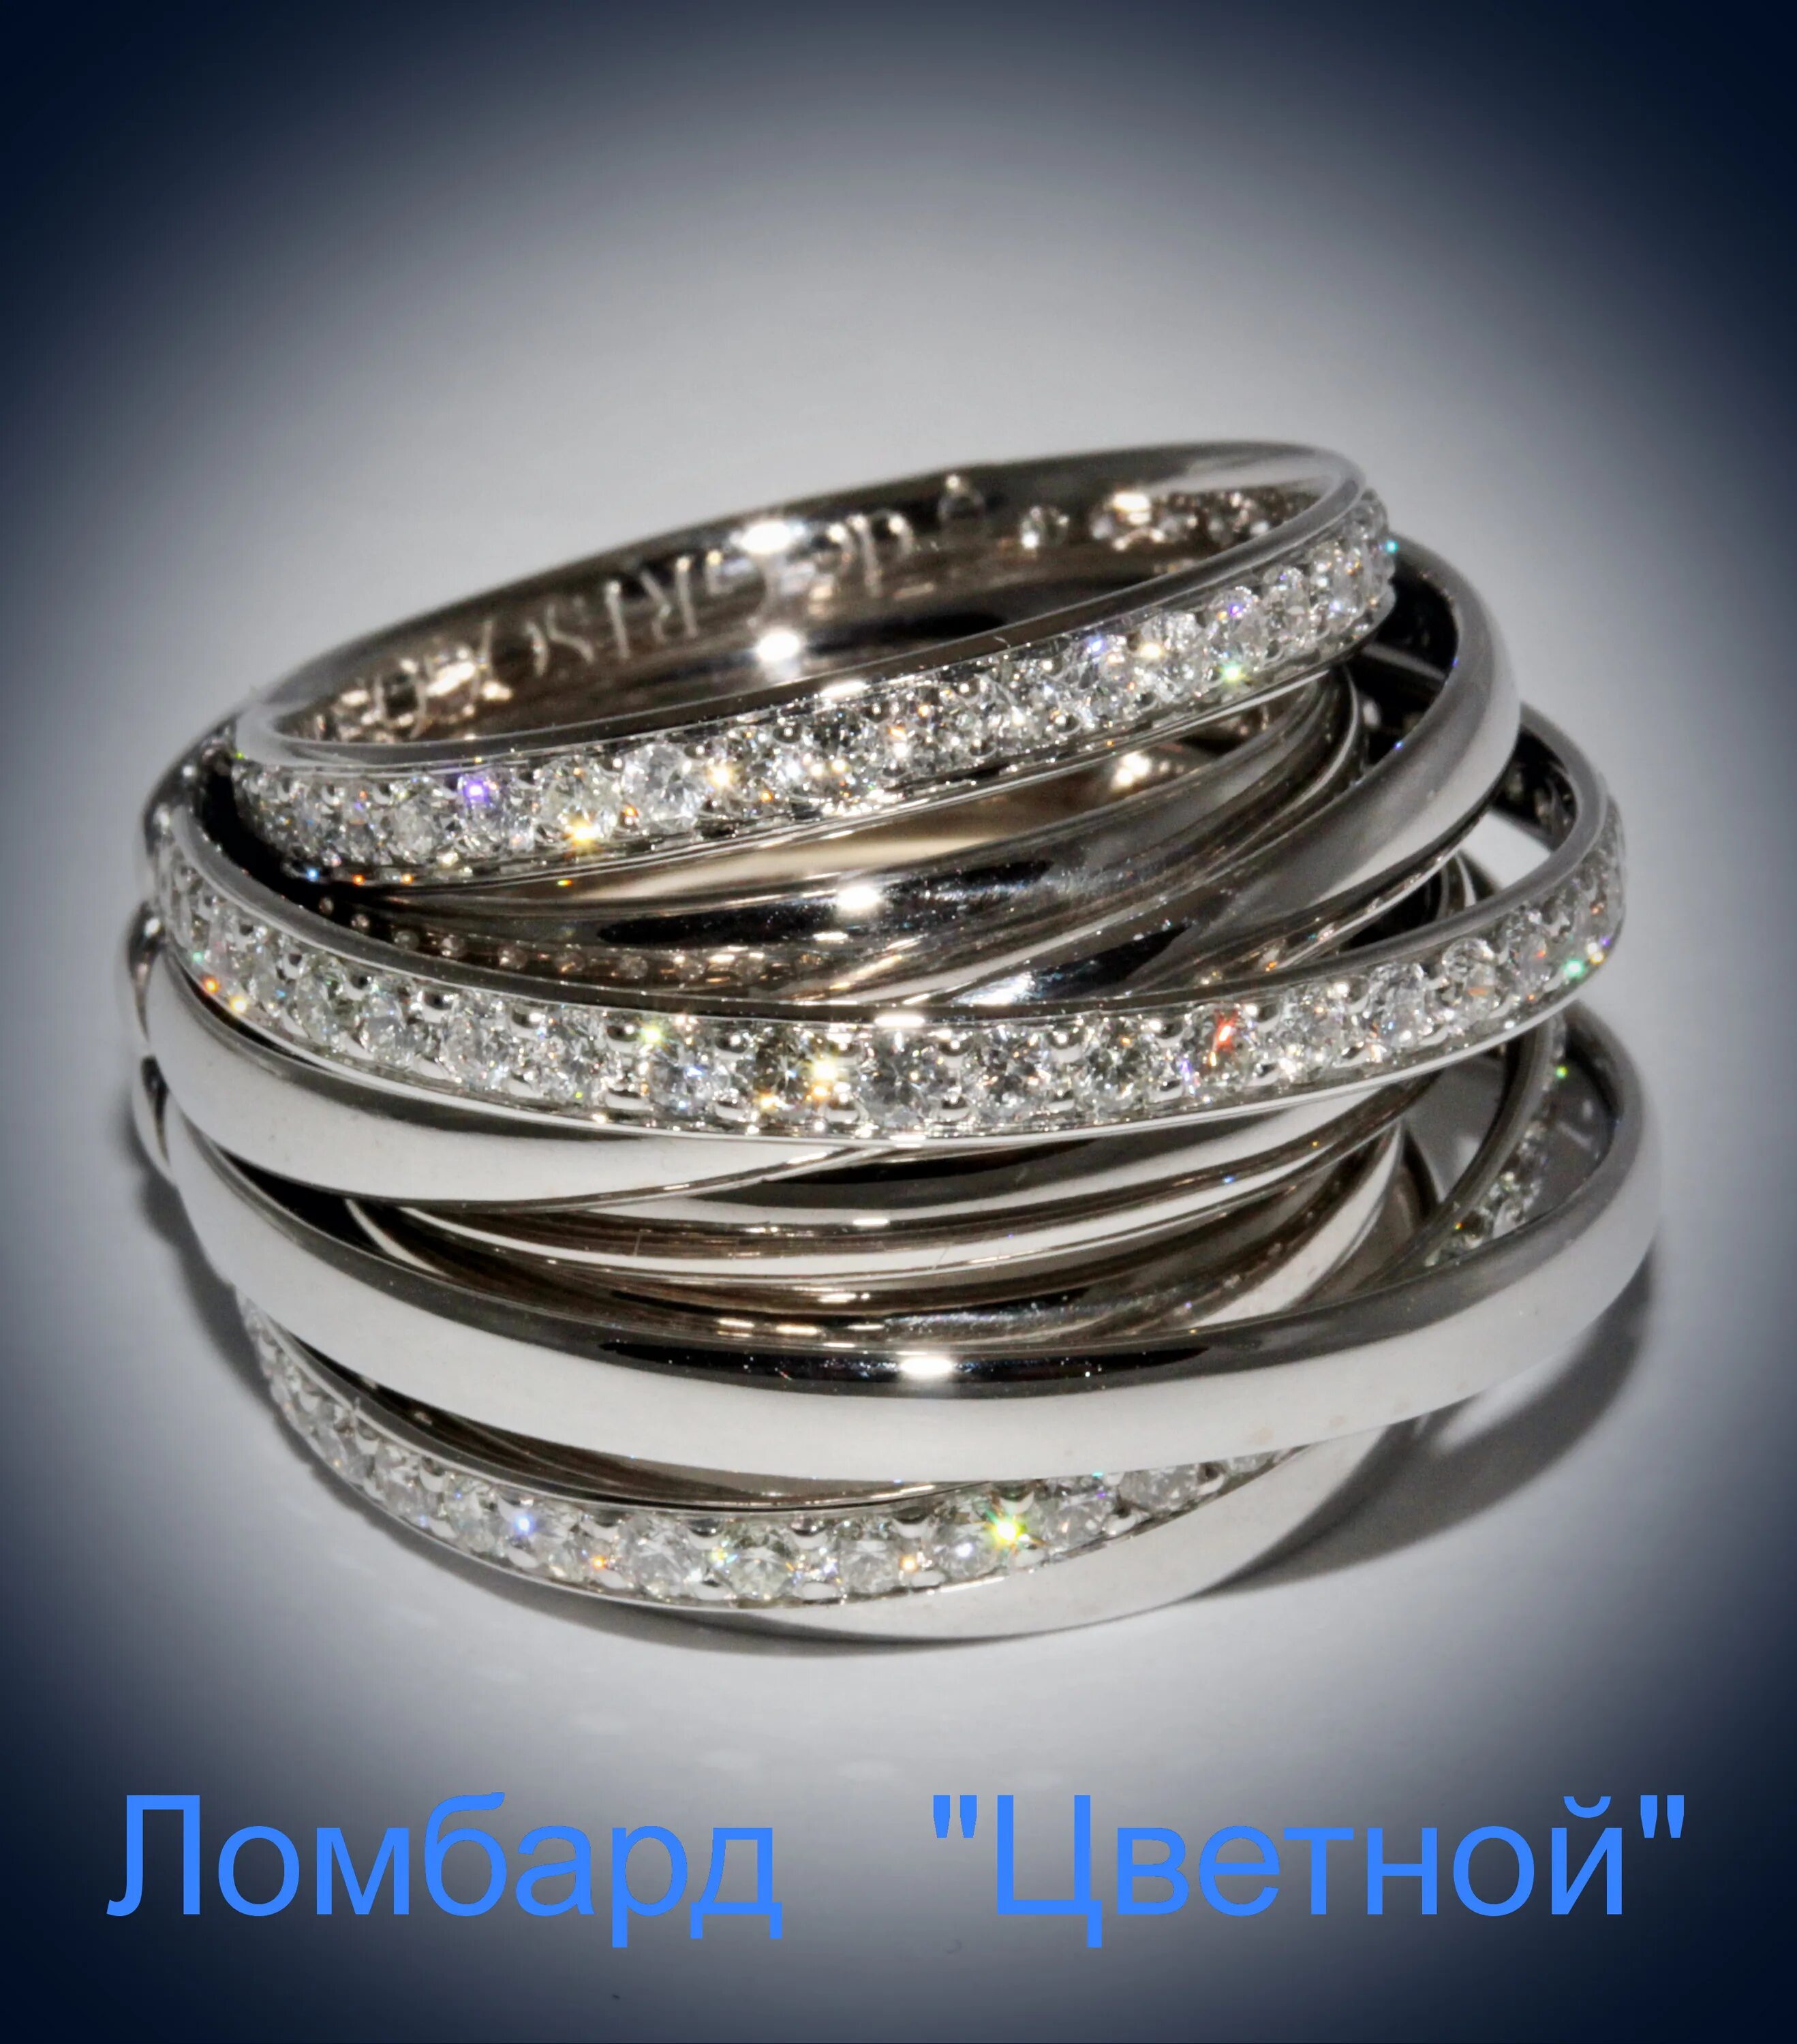 Ювелирный бренд Грисогоно. Кольцо Картье из 7 колец. Крупные серебряные кольца. Широкое кольцо с бриллиантами. Купить серебро с золотом